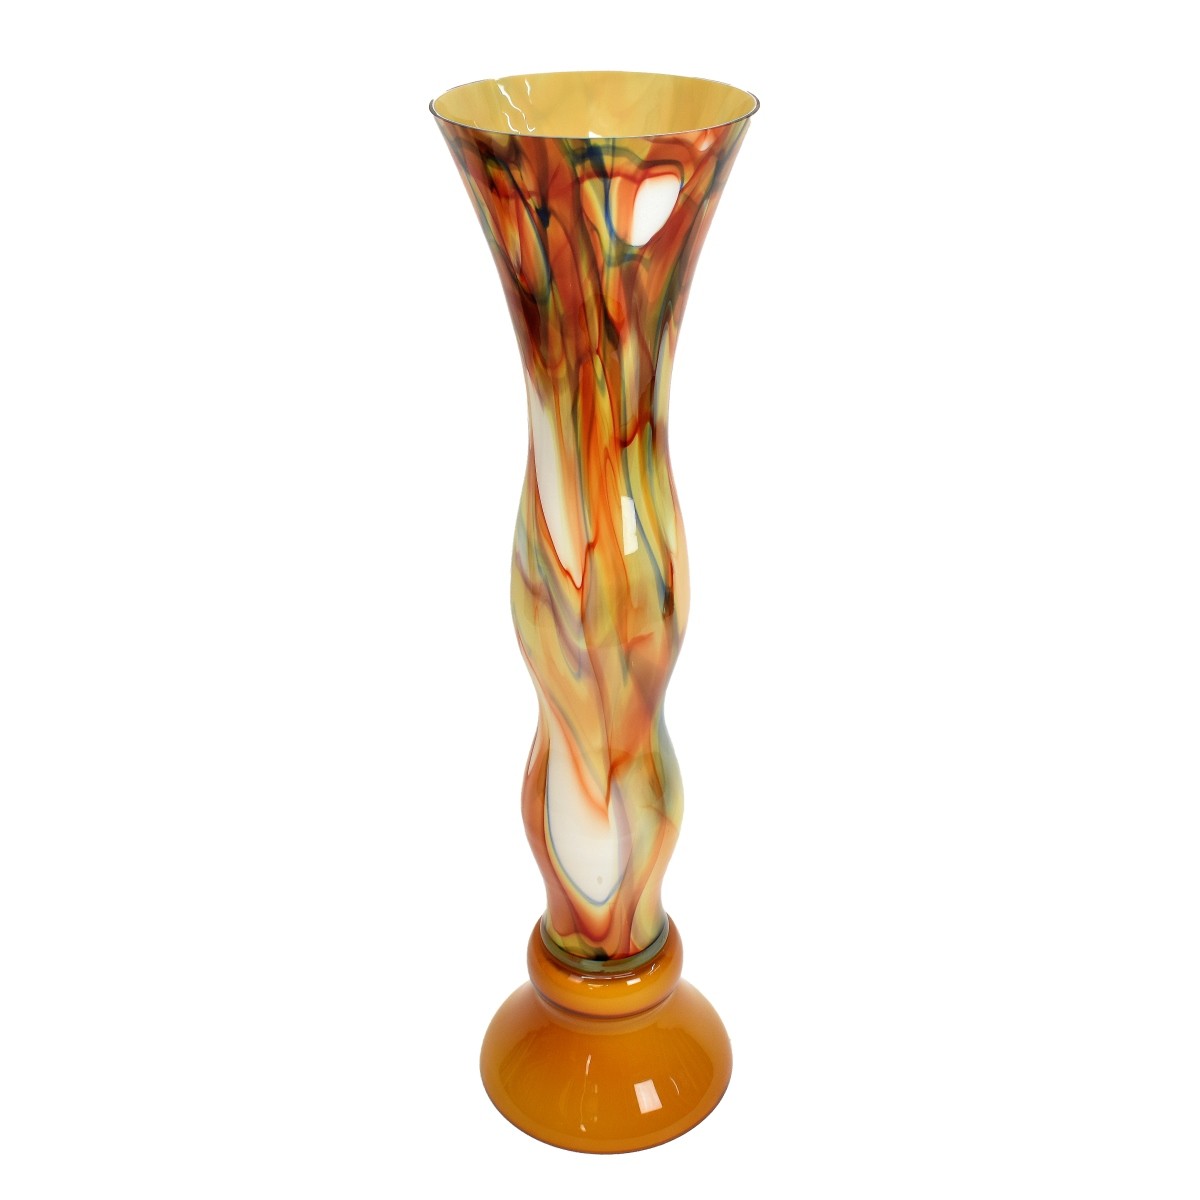 Palace Size Art Glass Vase